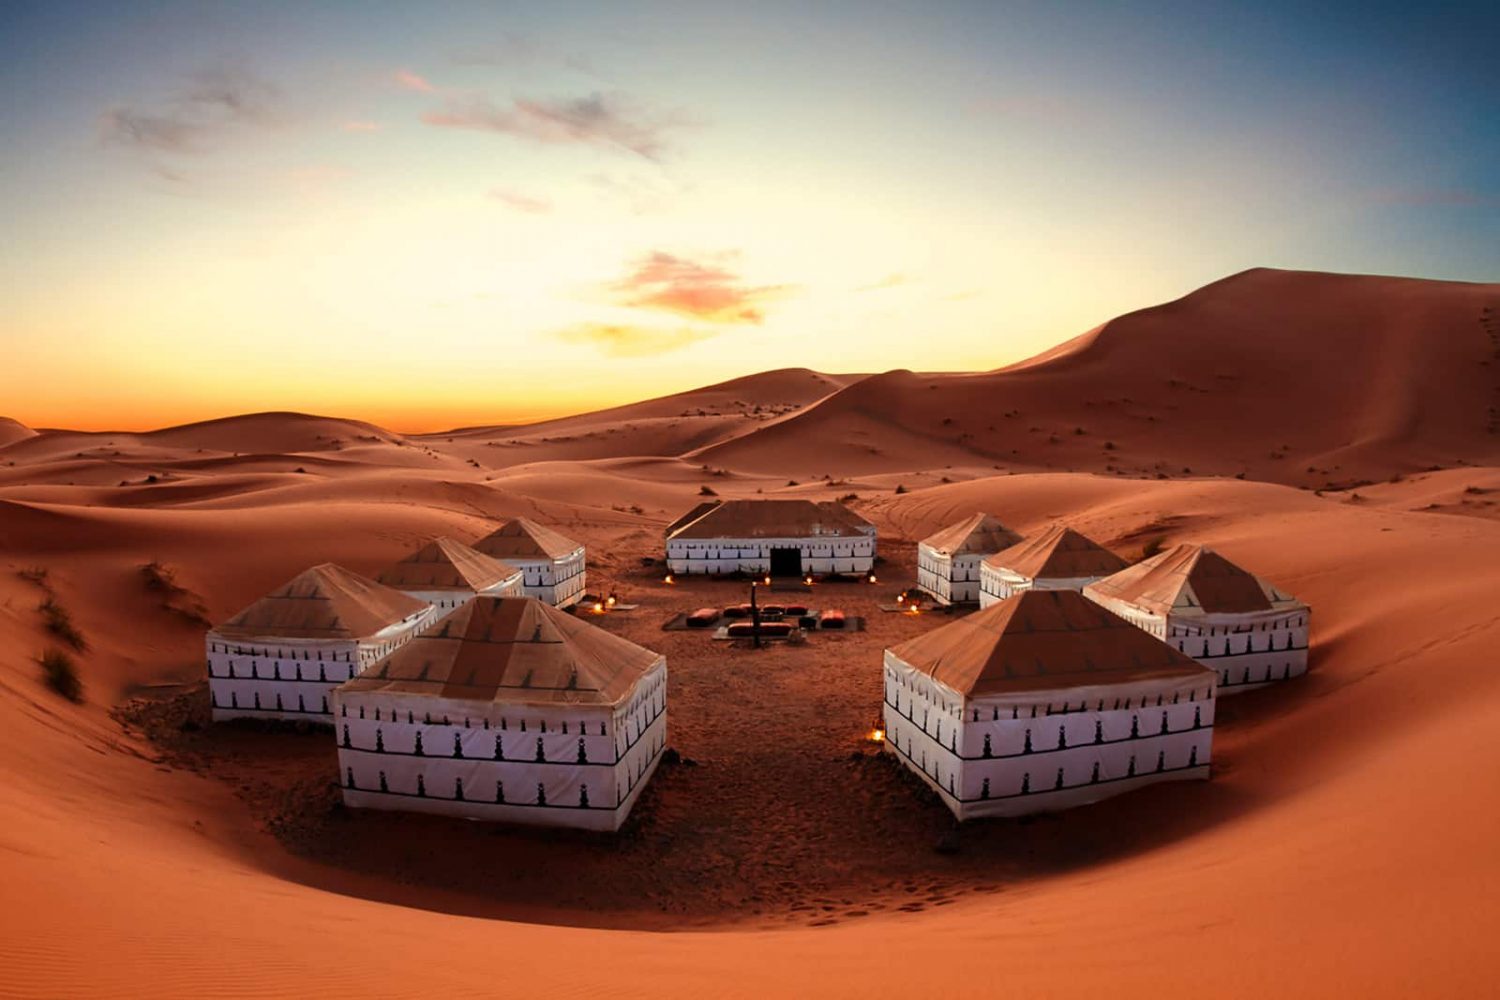 morocco tour desert tours